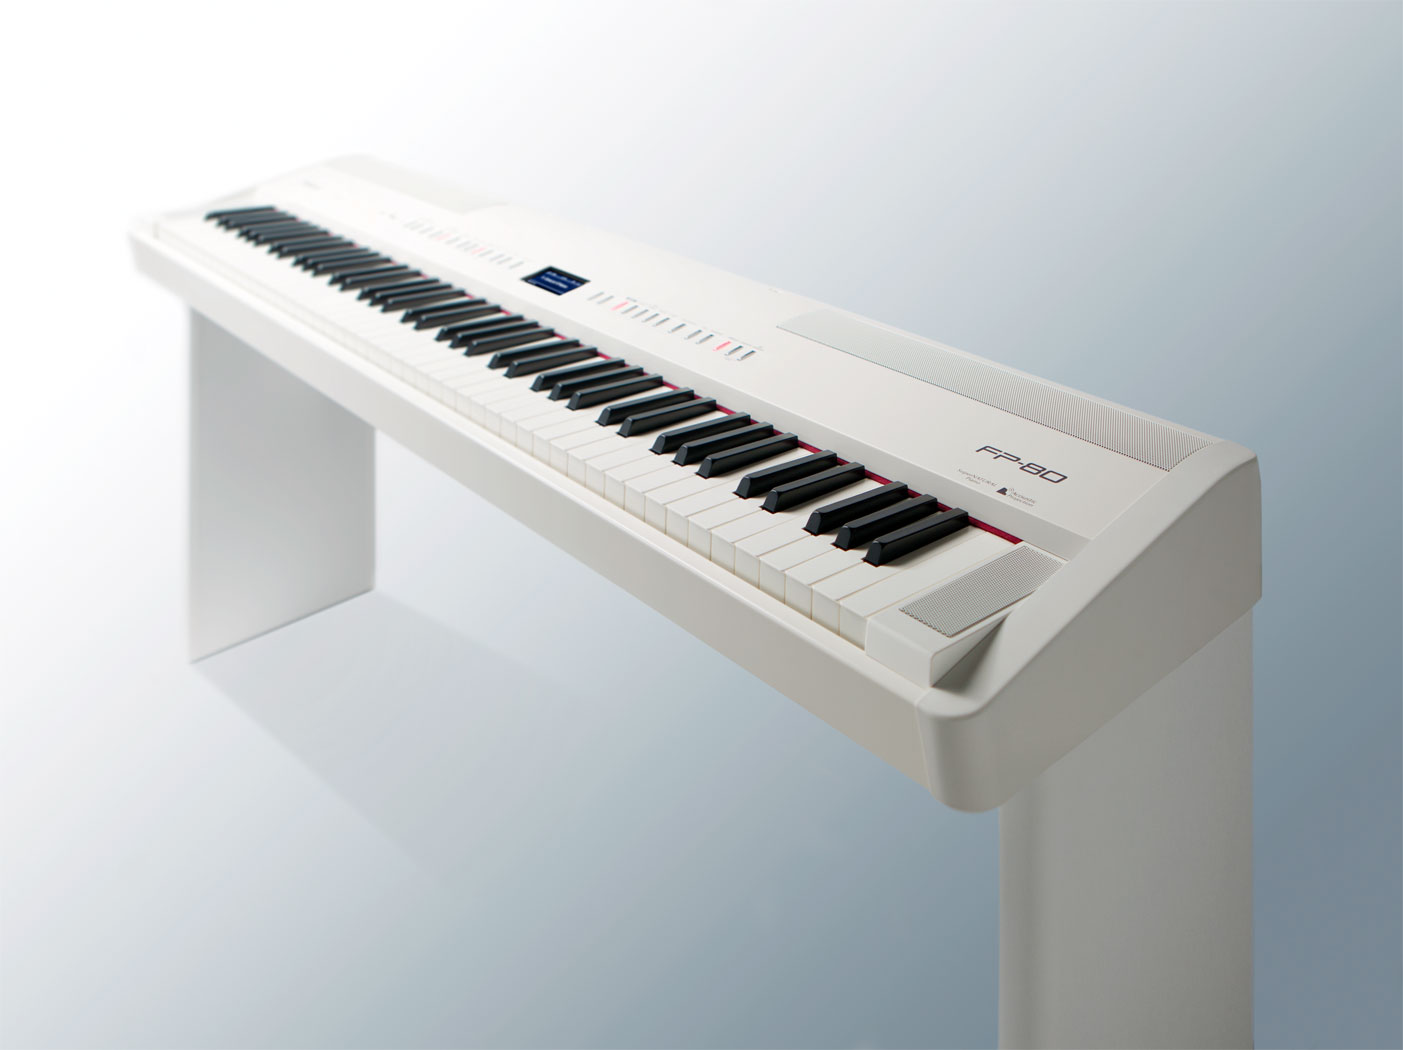 罗兰 Roland FP-80 88键 电钢琴  舞台电钢琴